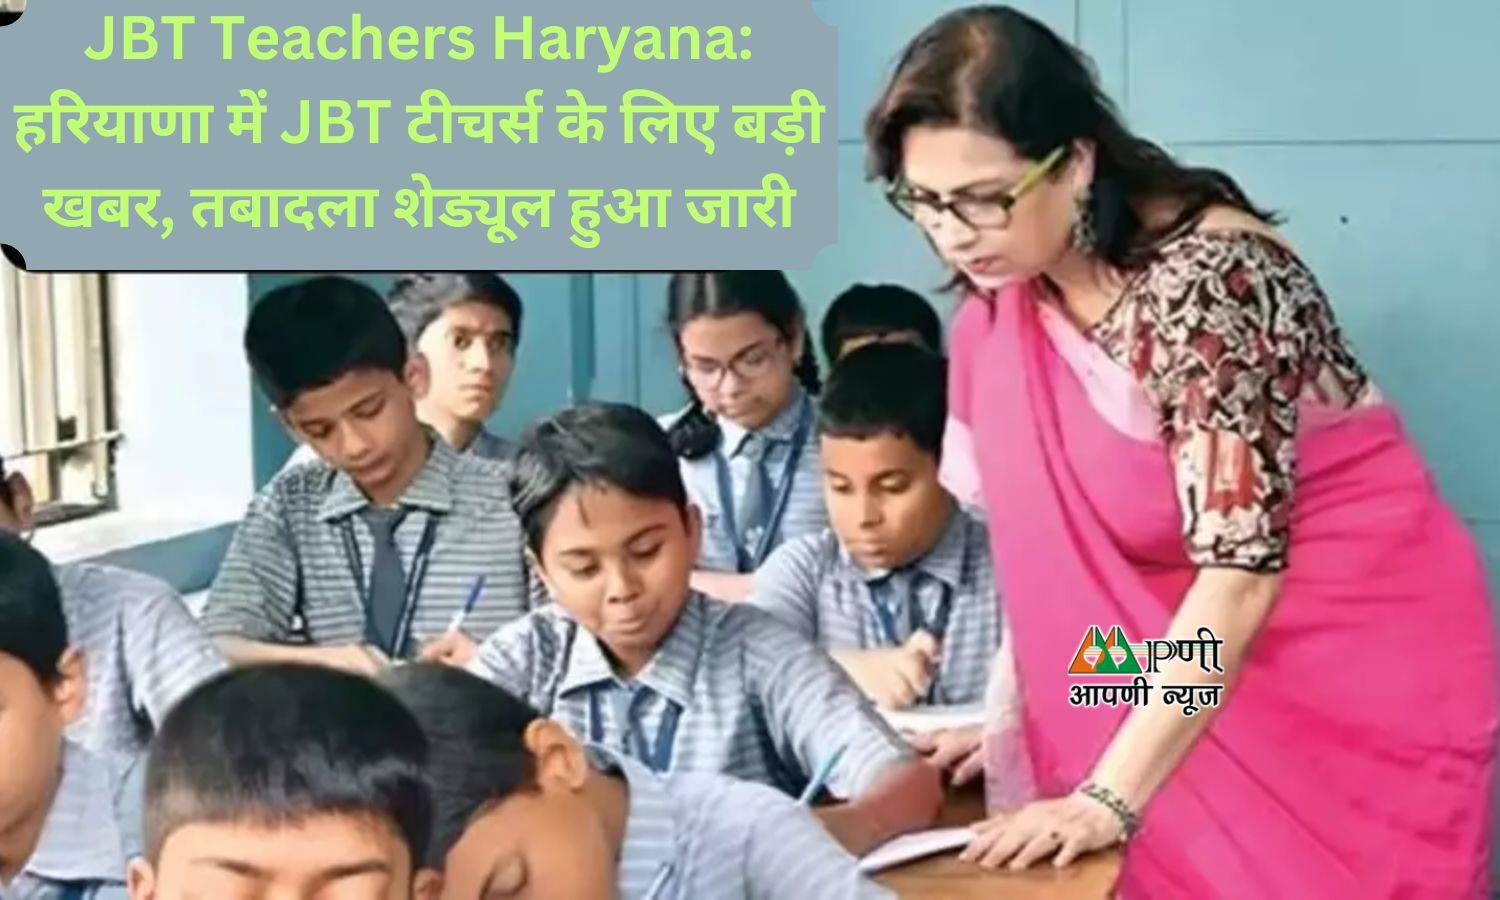 JBT Teachers Haryana: हरियाणा में JBT टीचर्स के लिए बड़ी खबर, तबादला शेड्यूल हुआ जारी